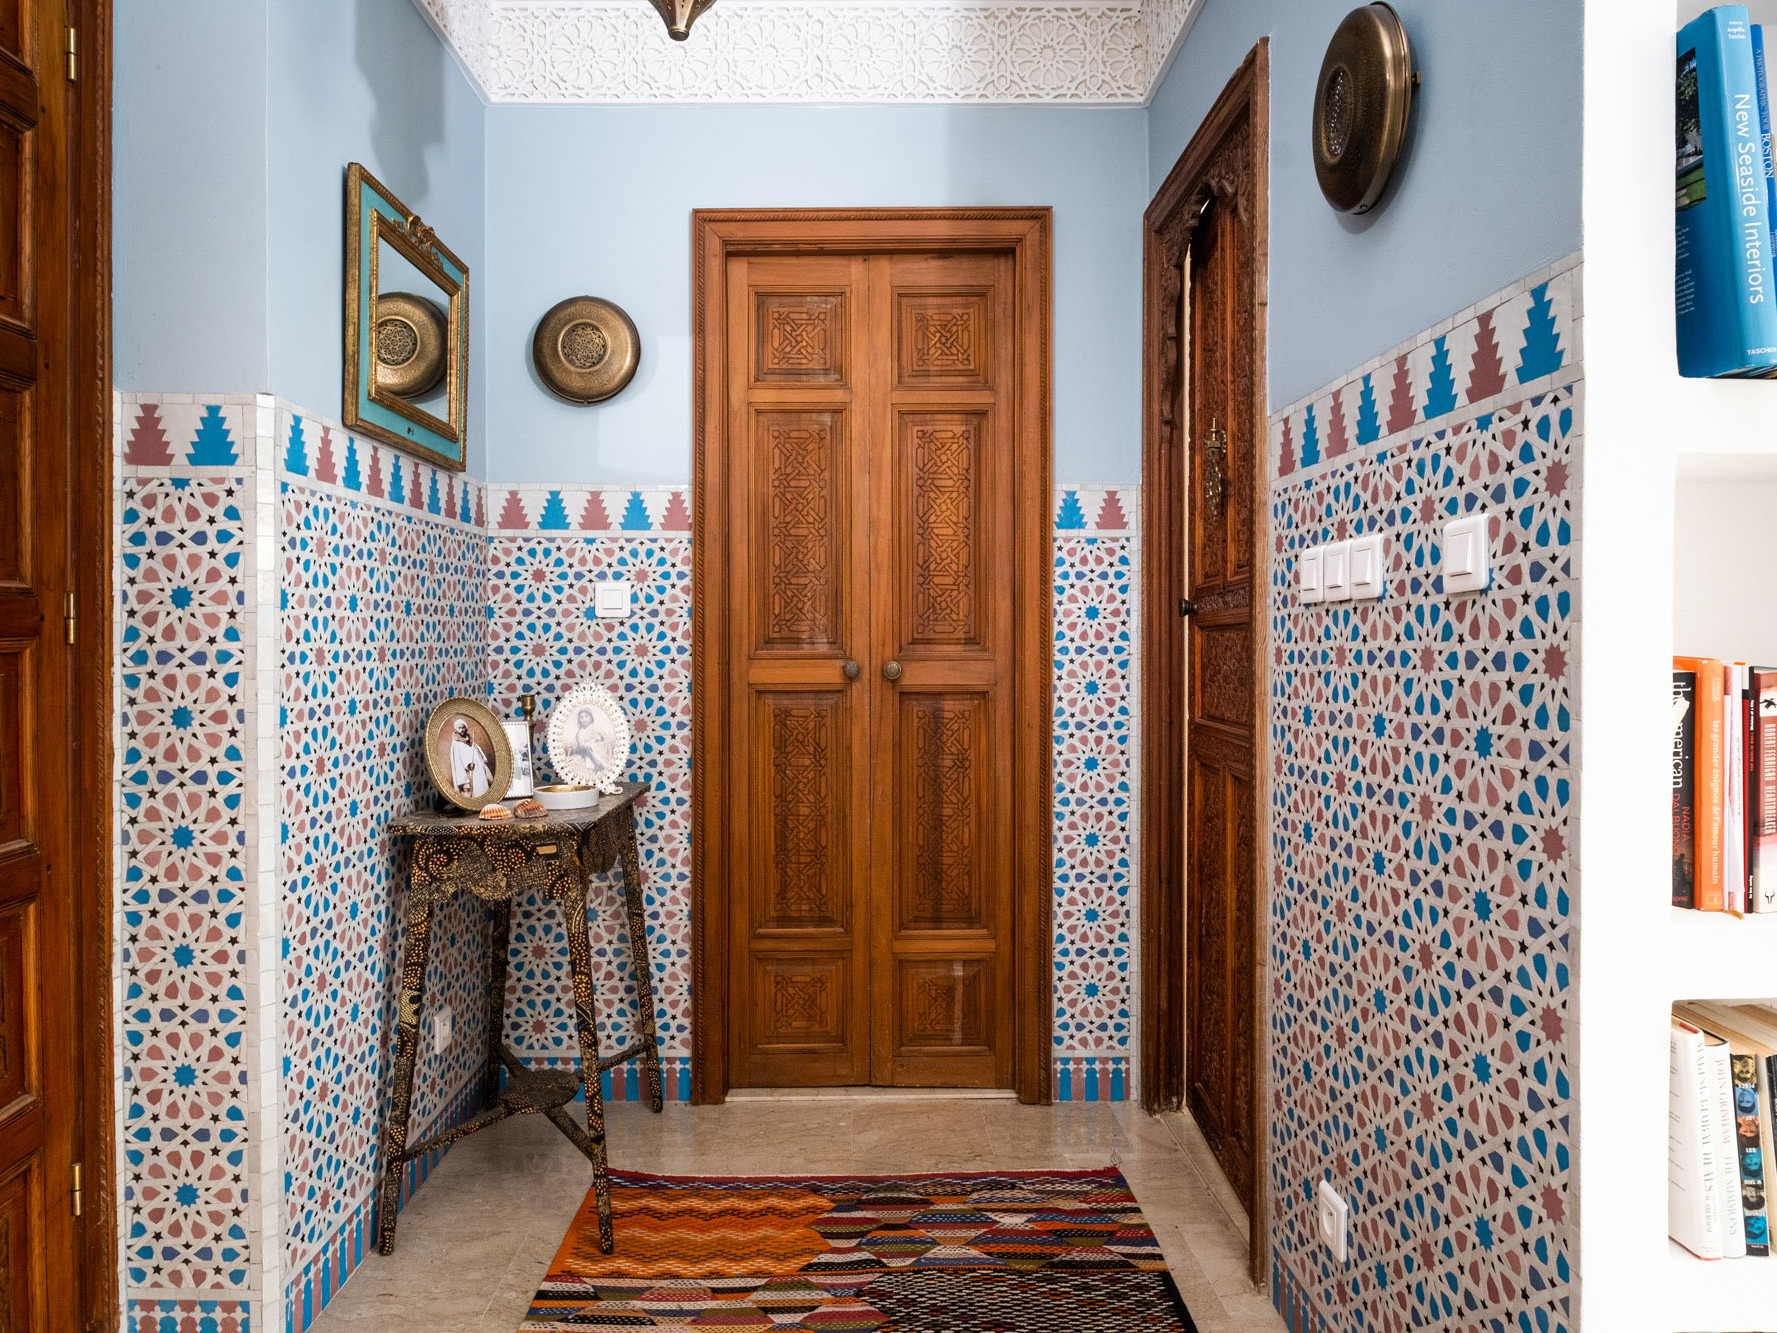 Moroccan Interiors pic